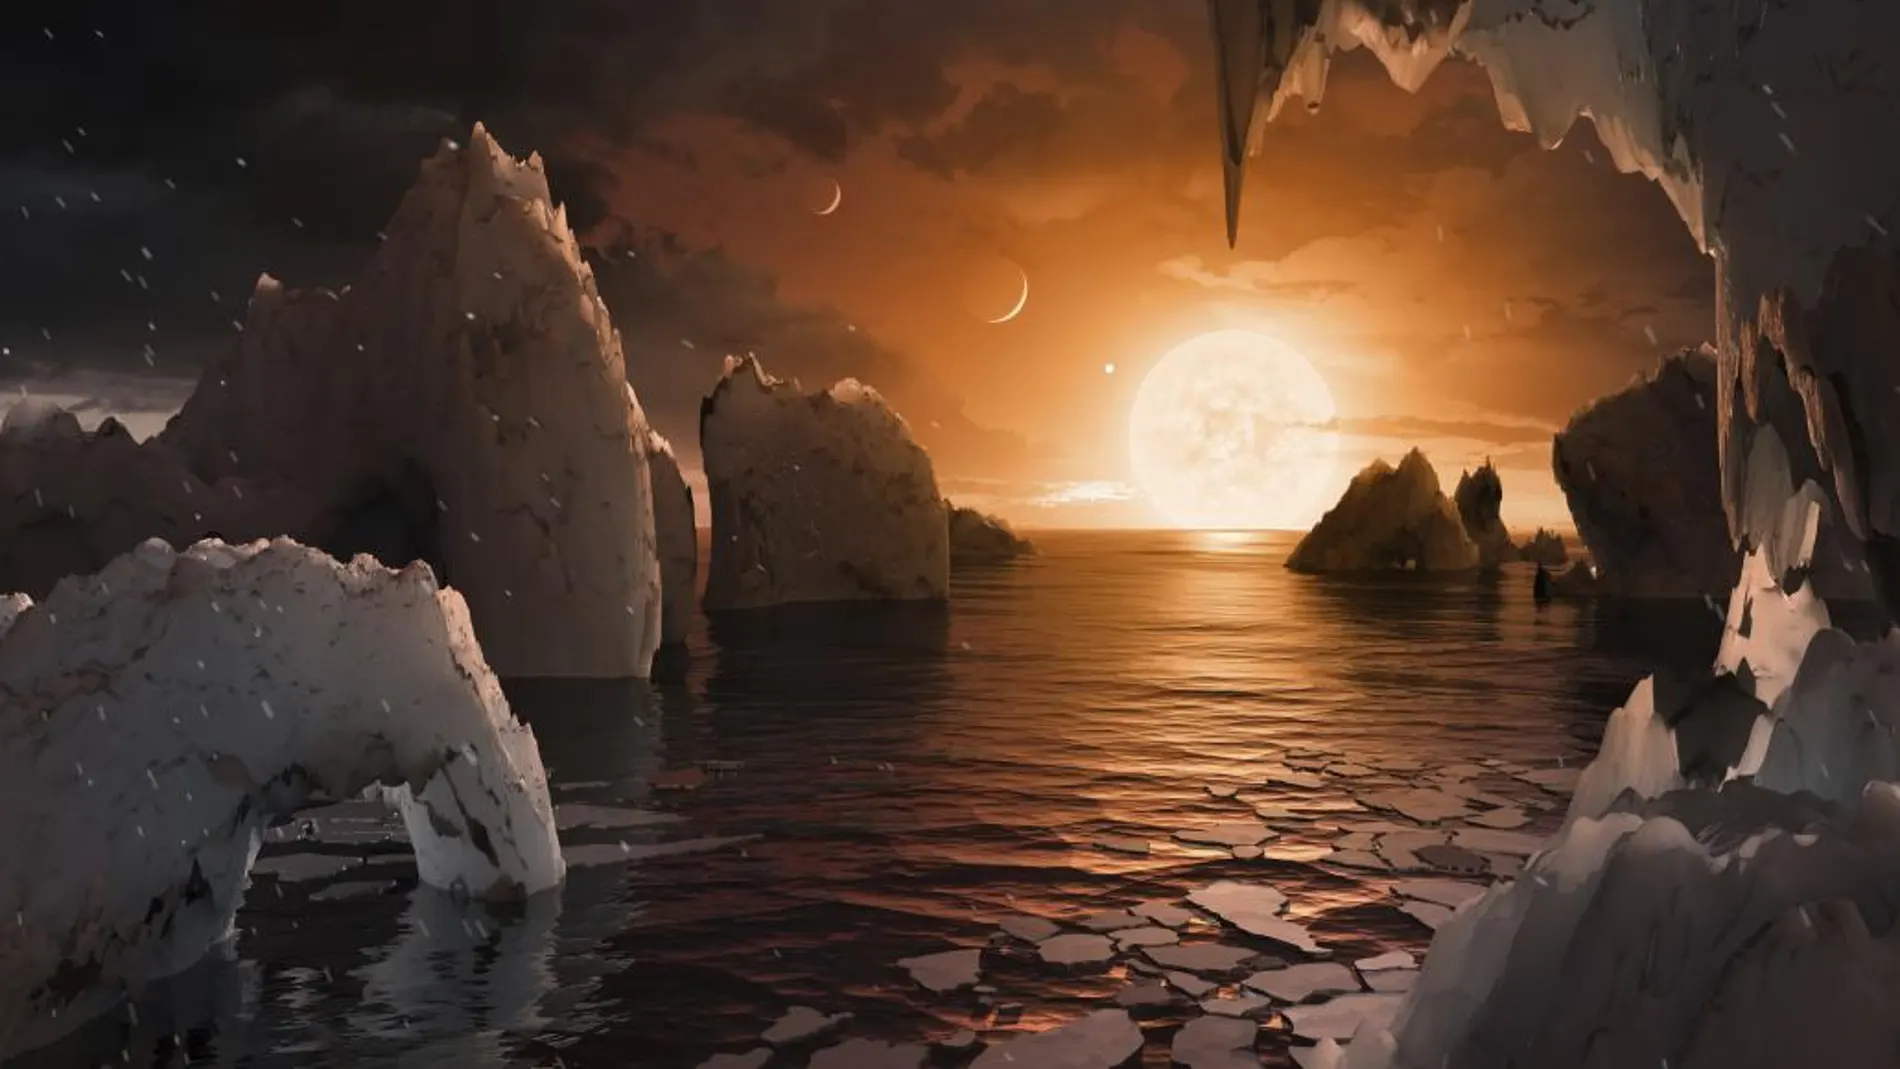 Sólo uno de los siete planetas de Trappist-1 podría albergar vida